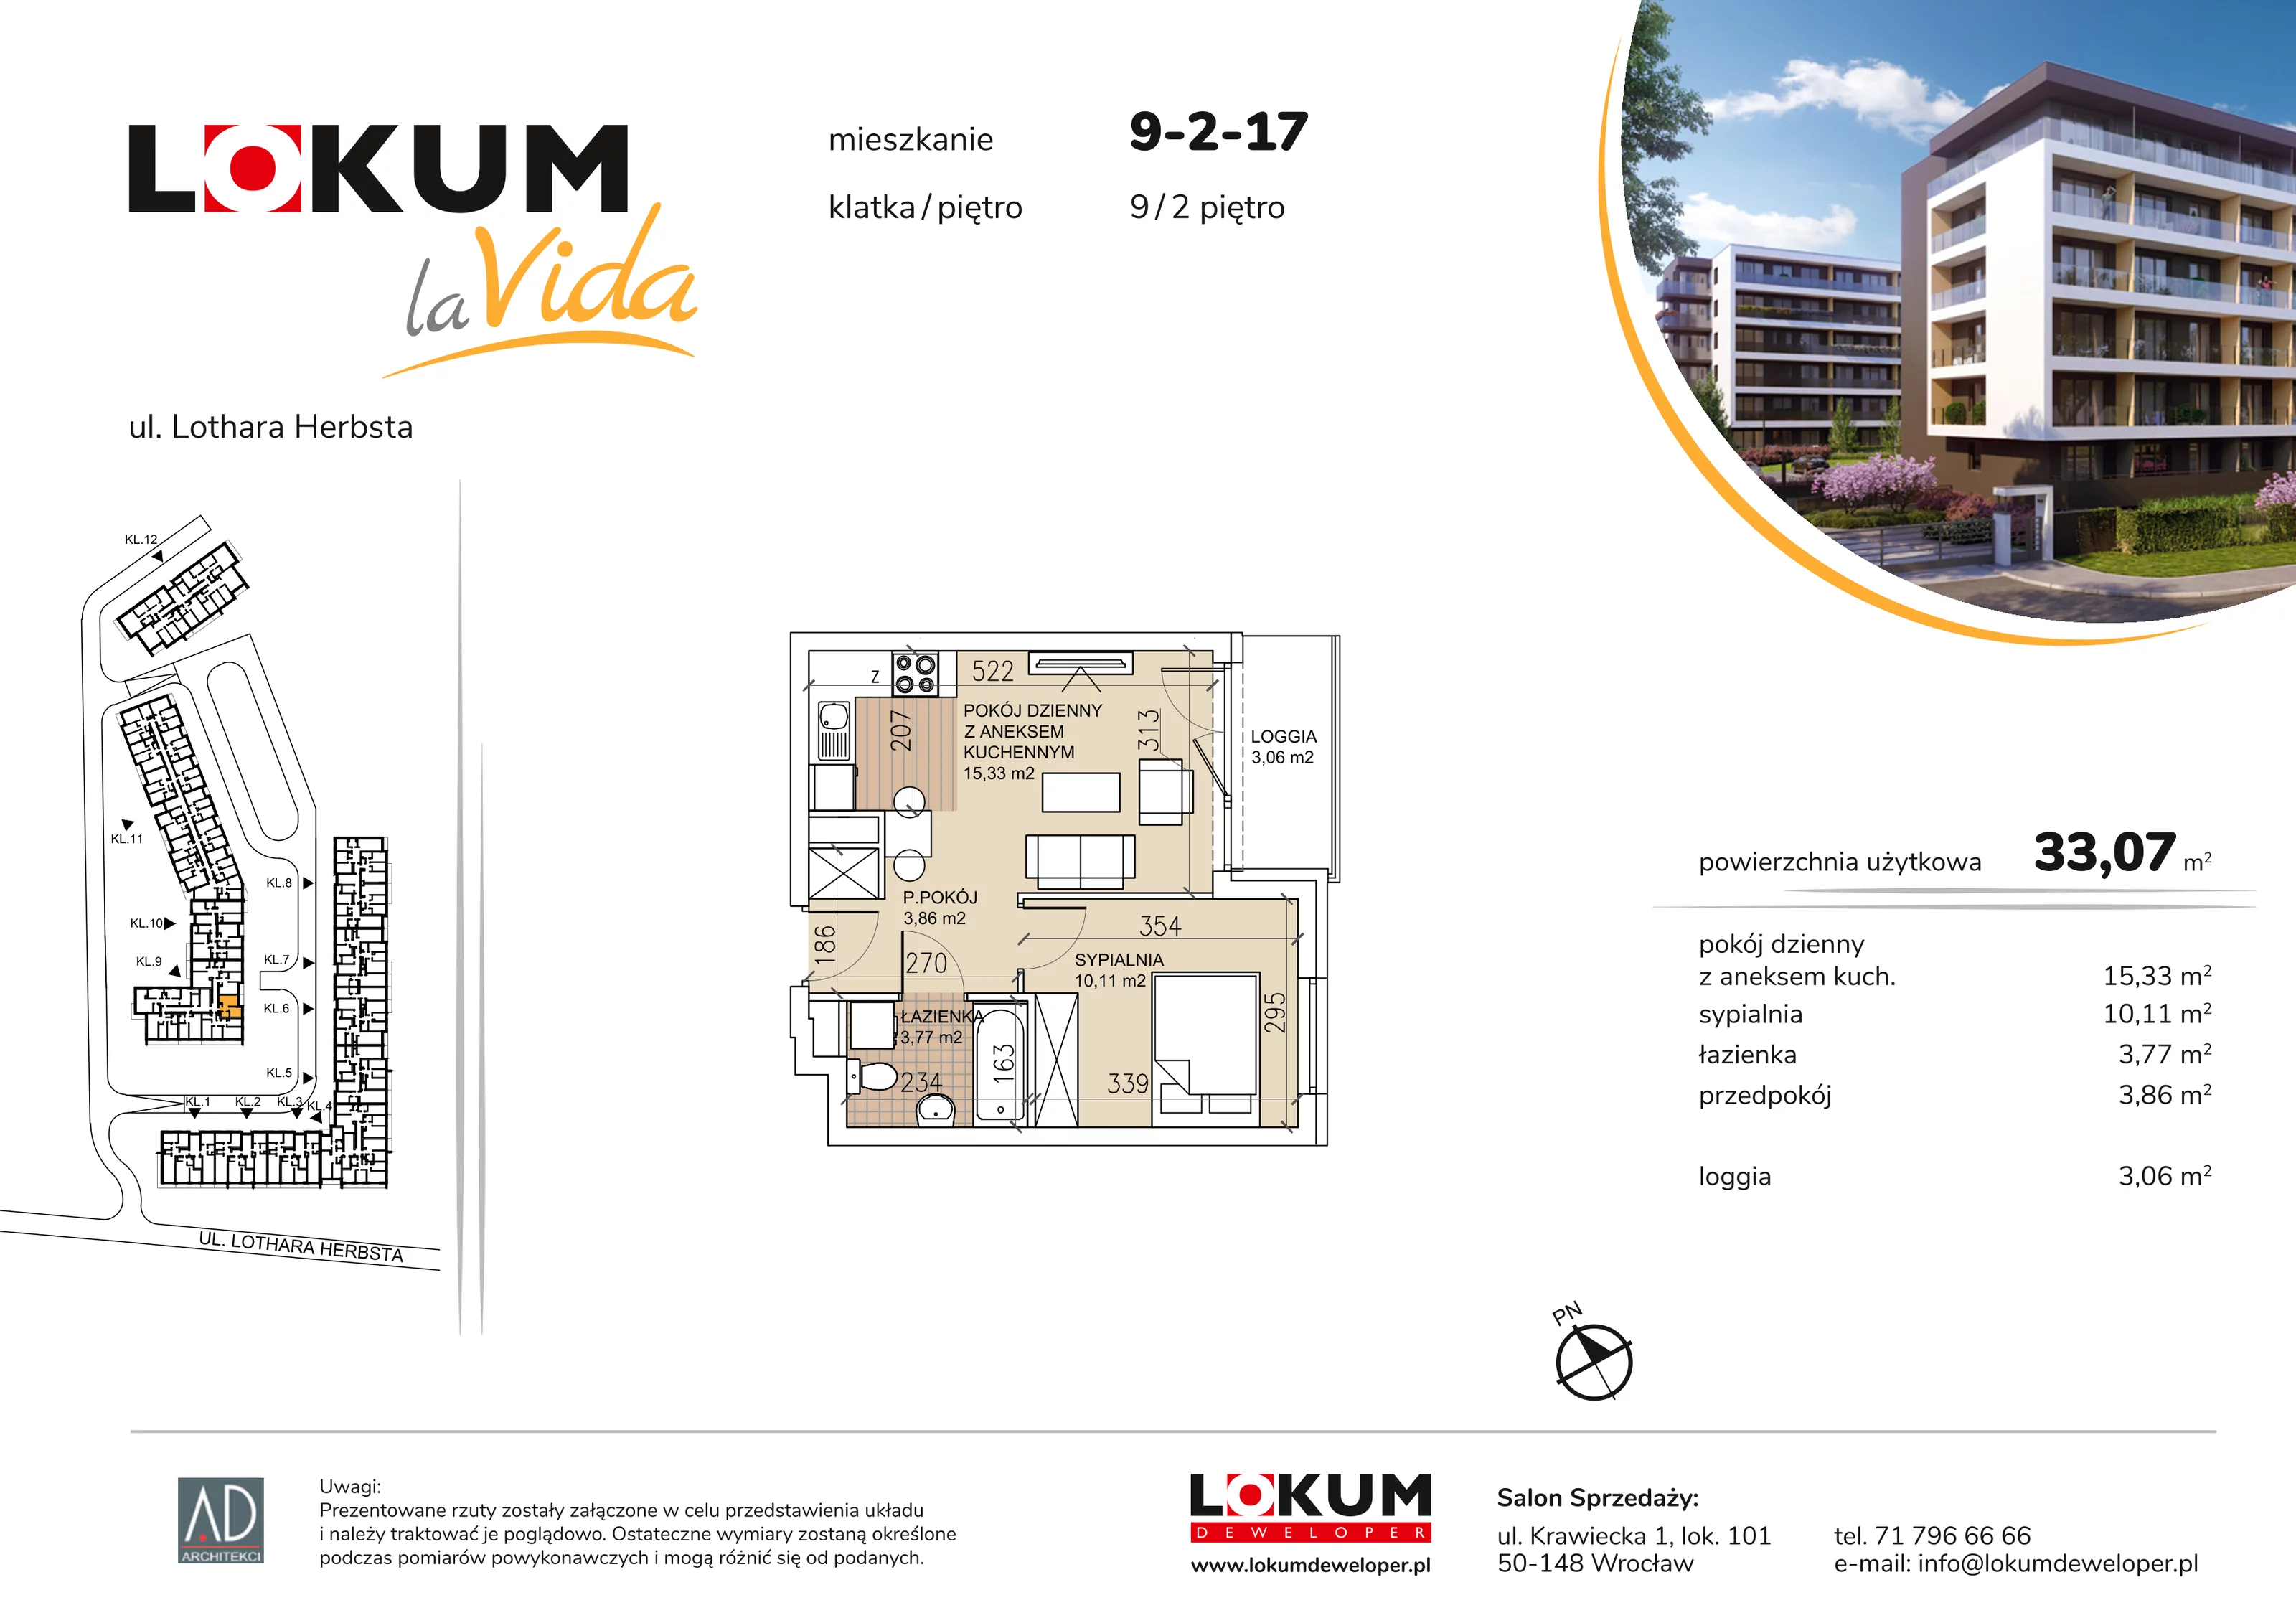 Mieszkanie 33,07 m², piętro 2, oferta nr 9-2-17, Lokum la Vida, Wrocław, Sołtysowice, ul. Lothara Herbsta